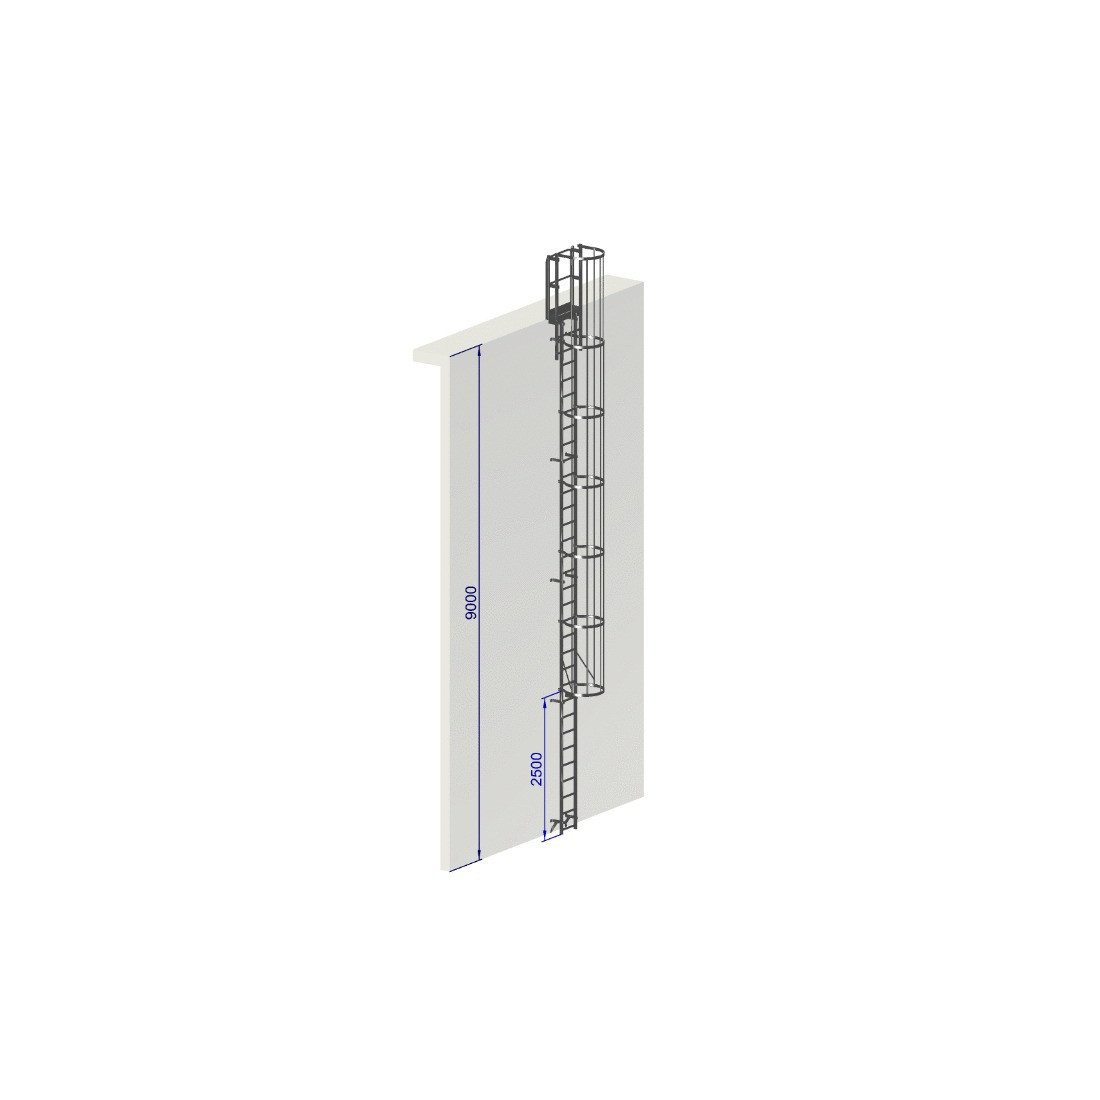 Escalera de protección dorsal - Crinolina altura 9000 mm EN ISO 14122-4